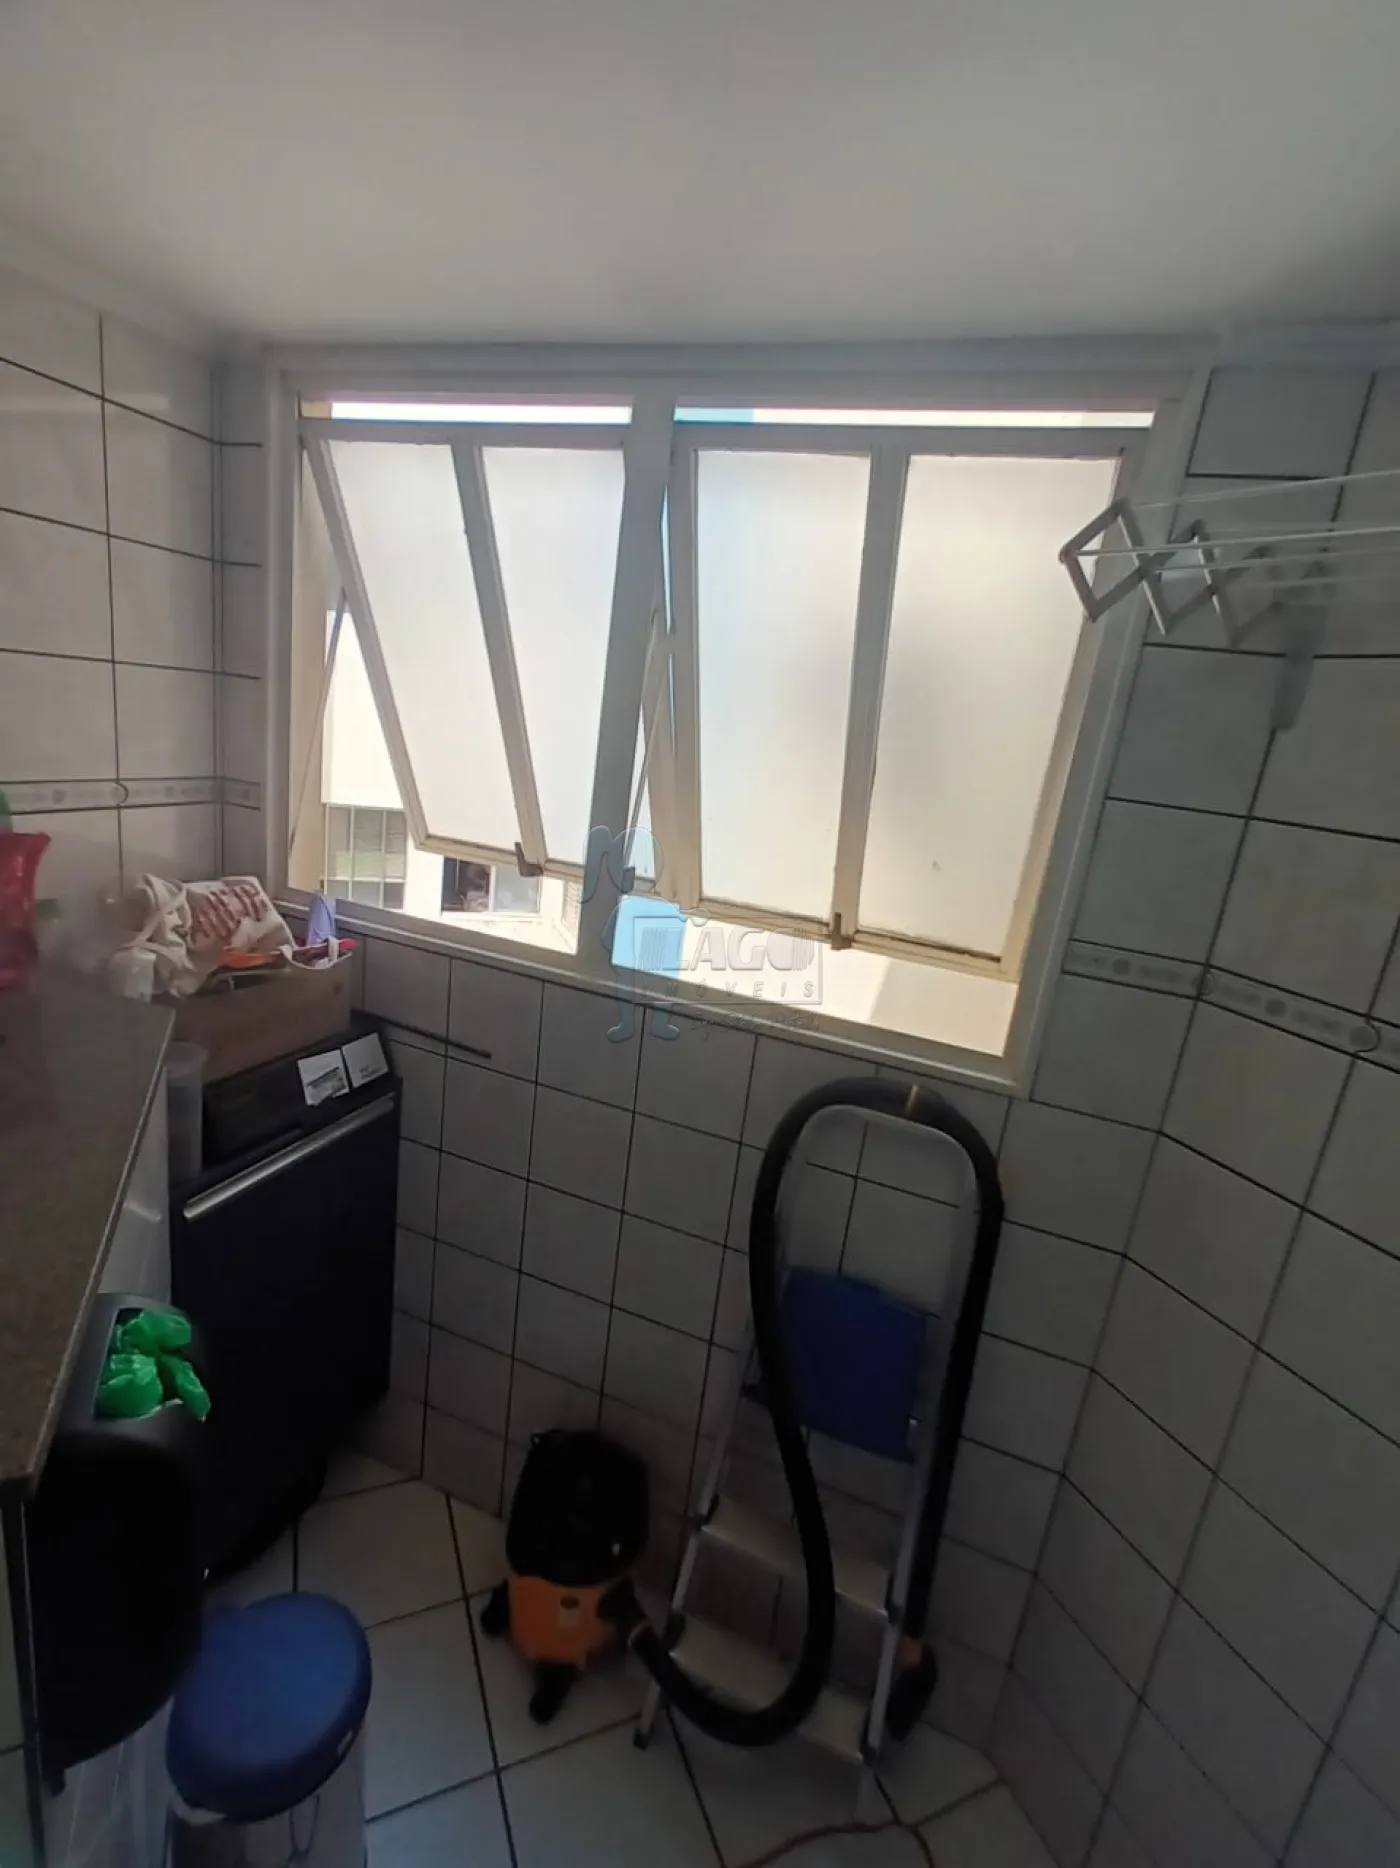 Comprar Apartamentos / Padrão em Ribeirão Preto R$ 270.000,00 - Foto 5